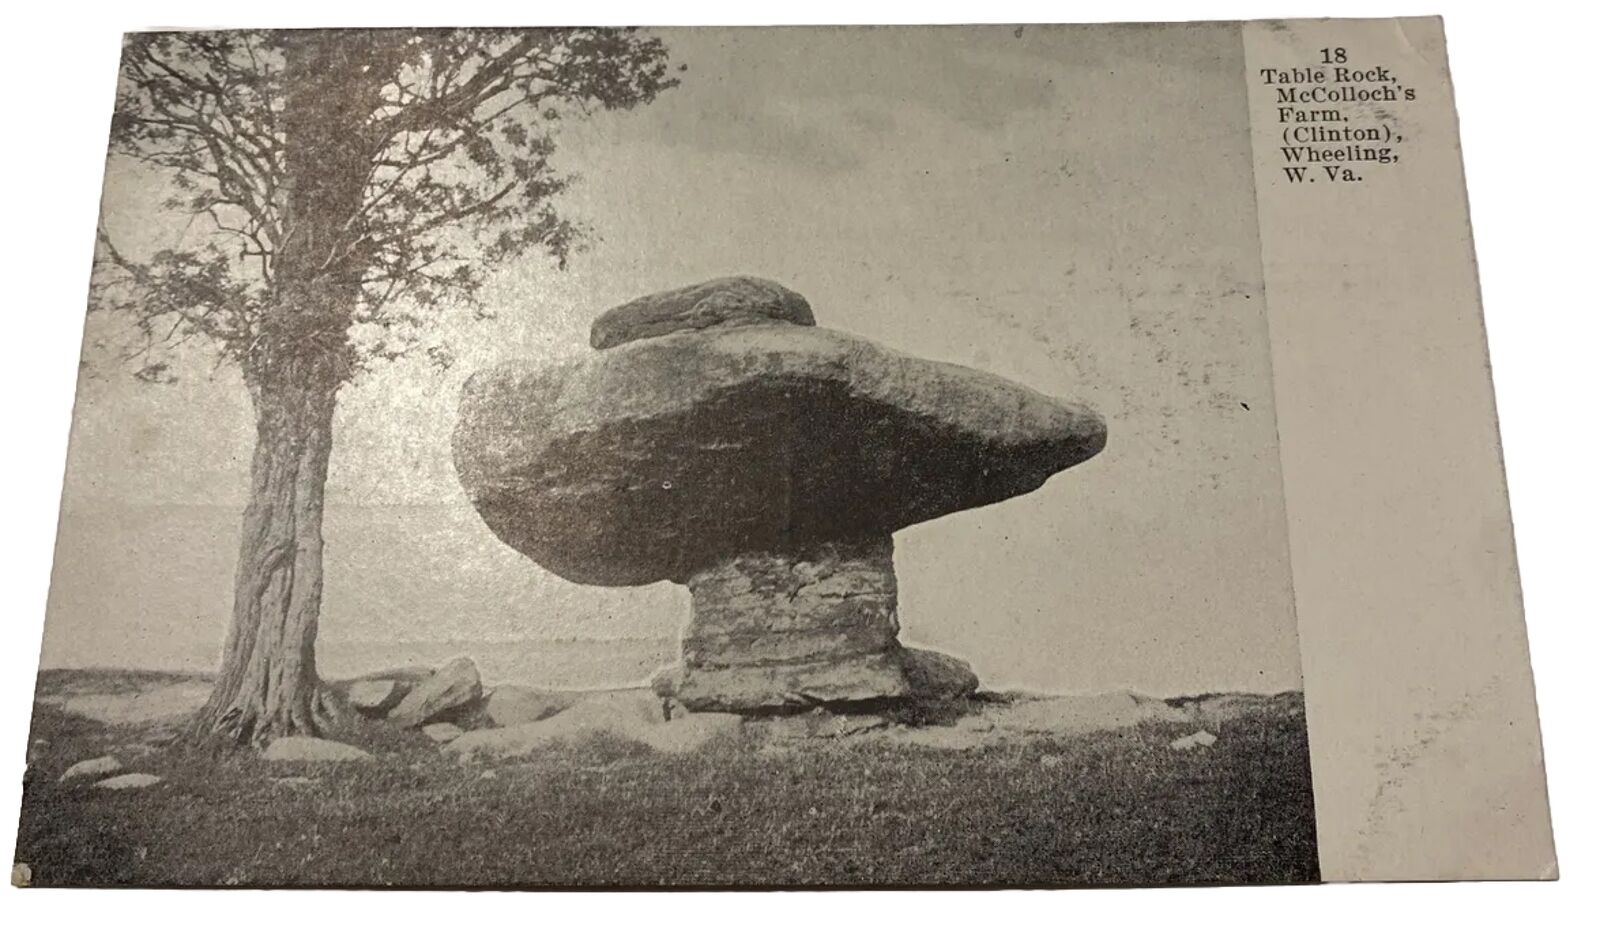 Postcard W Virginia Table Rock Wheeling (Clinton) McCulloch\'s Farm Ohio Cty 1902